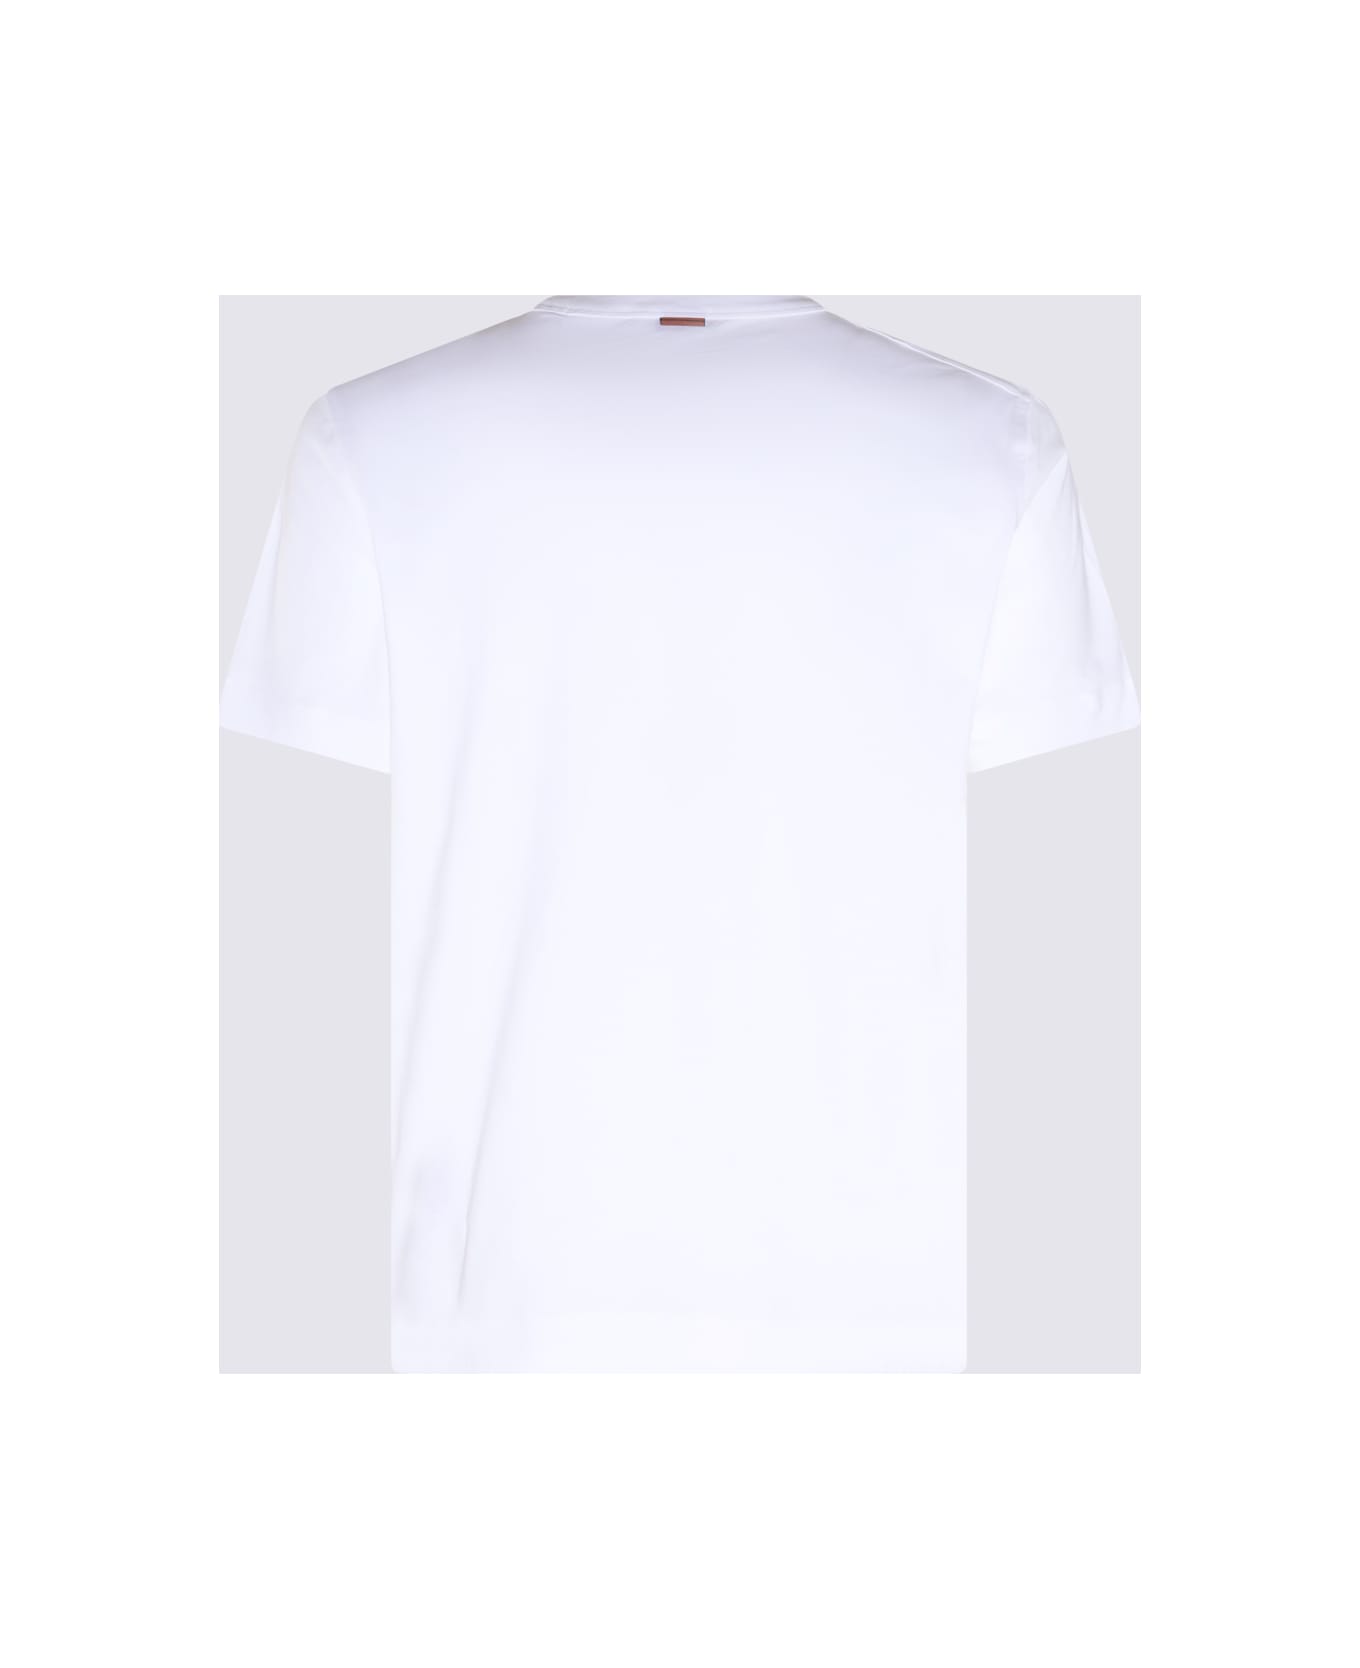 Zegna White Cotton T-shirt - White